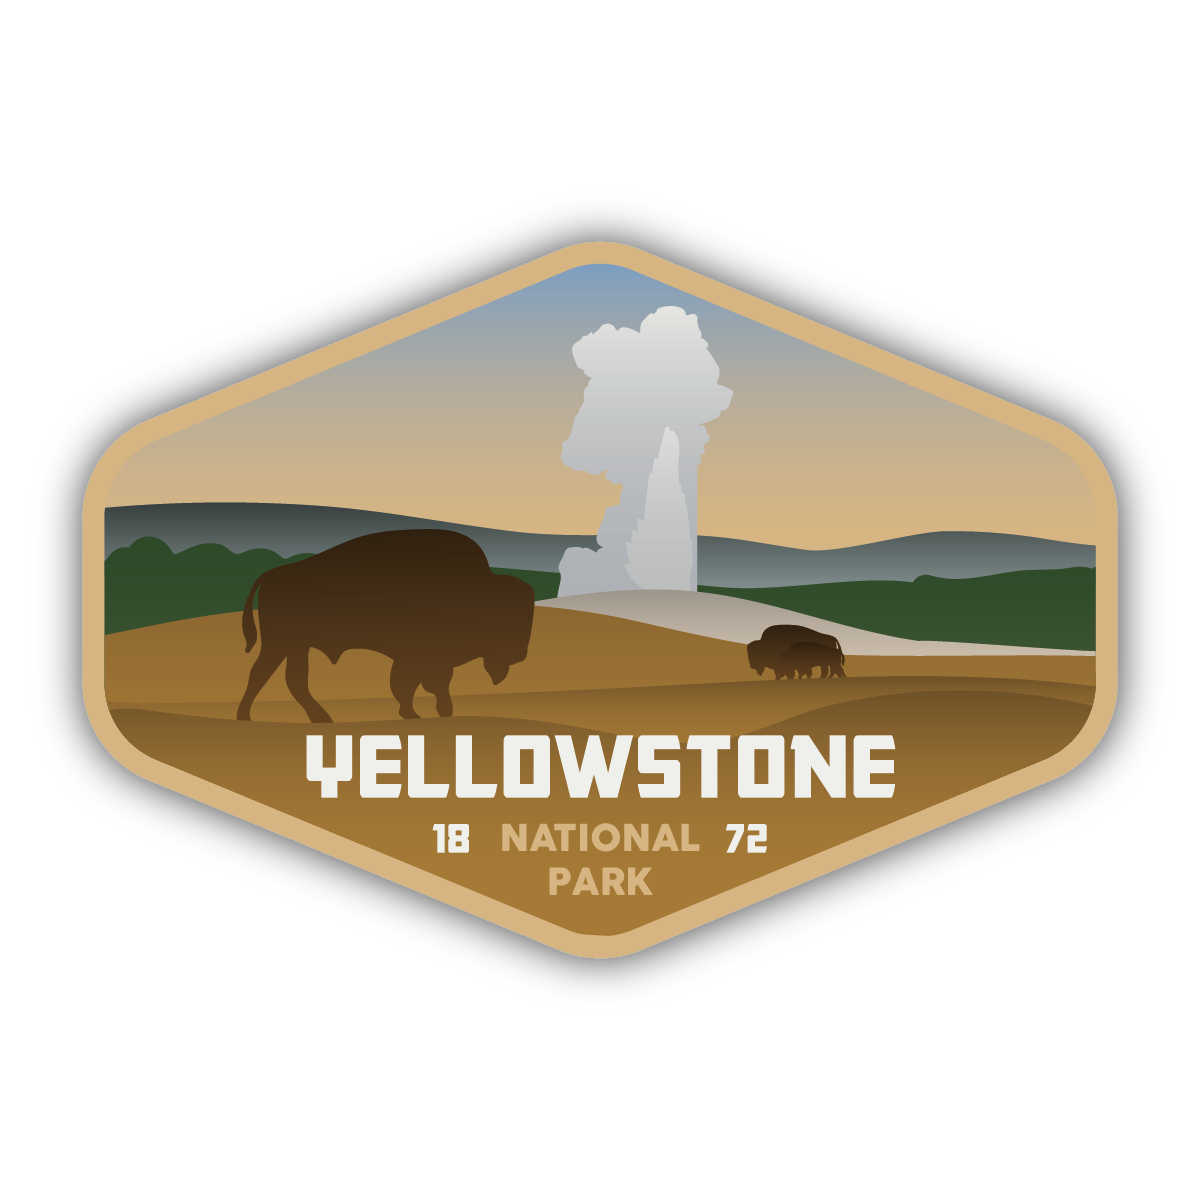 Yellowstone PNG Image HD